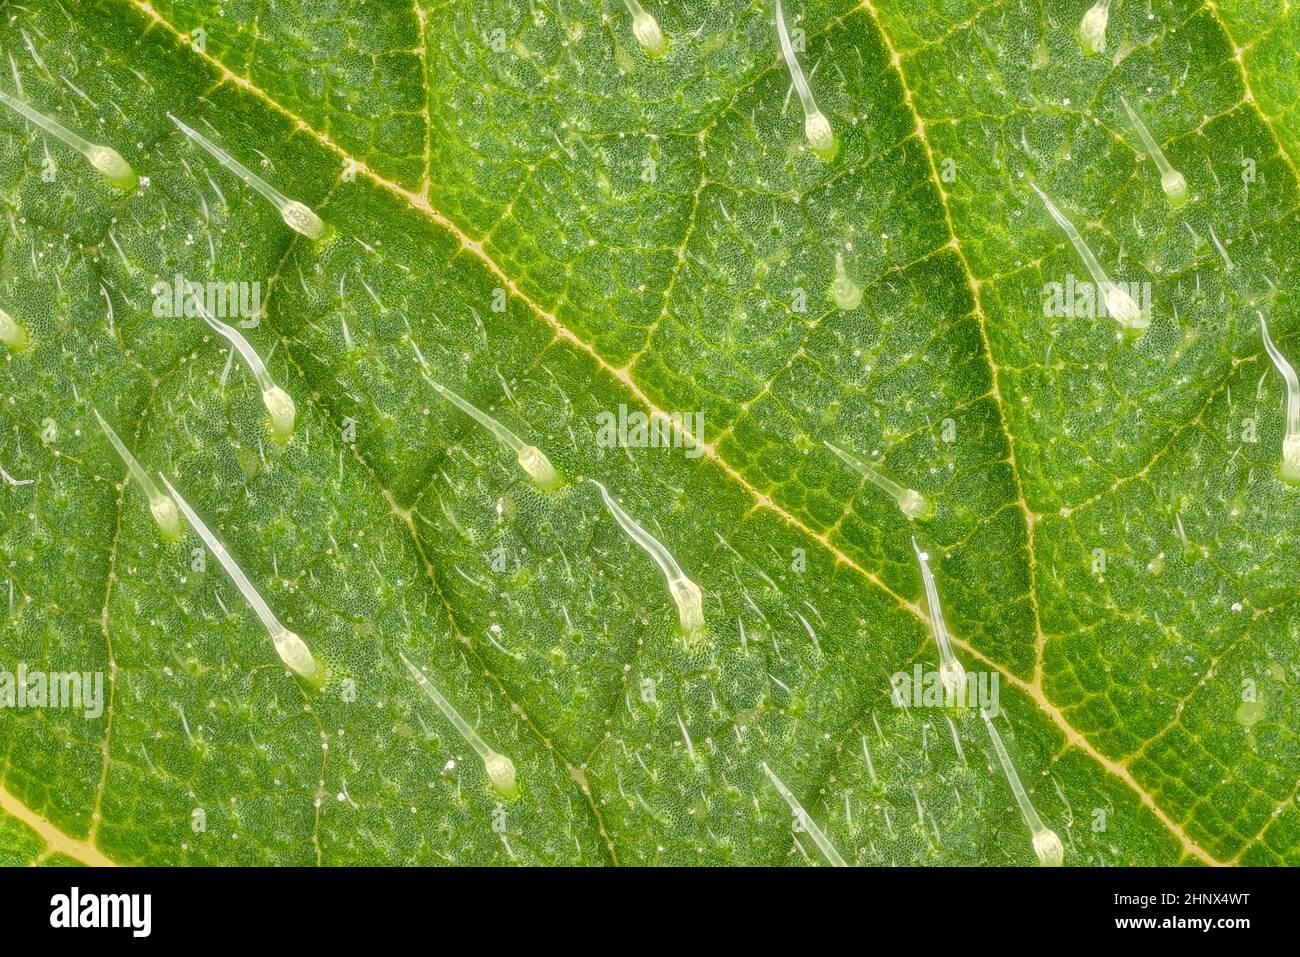 Brennnessel - Urtica dioica - Blatt, Mikroskop Detail, transparente  Stachelhaare genannt Trichome sichtbar, Bildbreite 9mm Stockfotografie -  Alamy